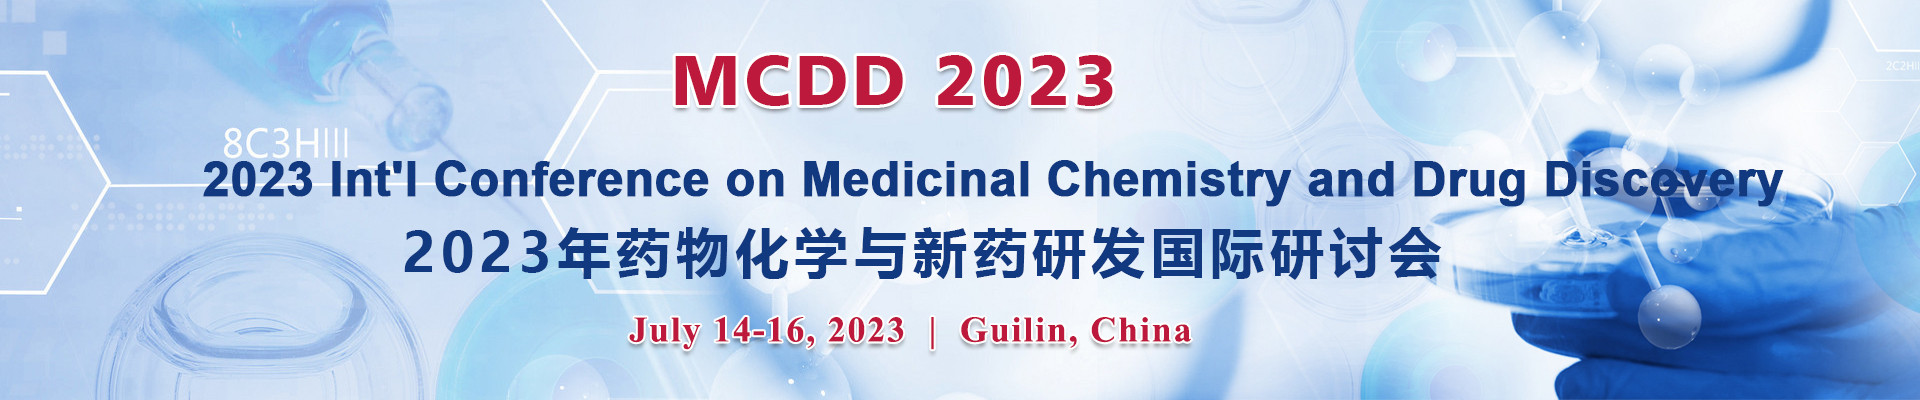 2023年药物化学与新药研发国际研讨会 (MCDD 2023) 